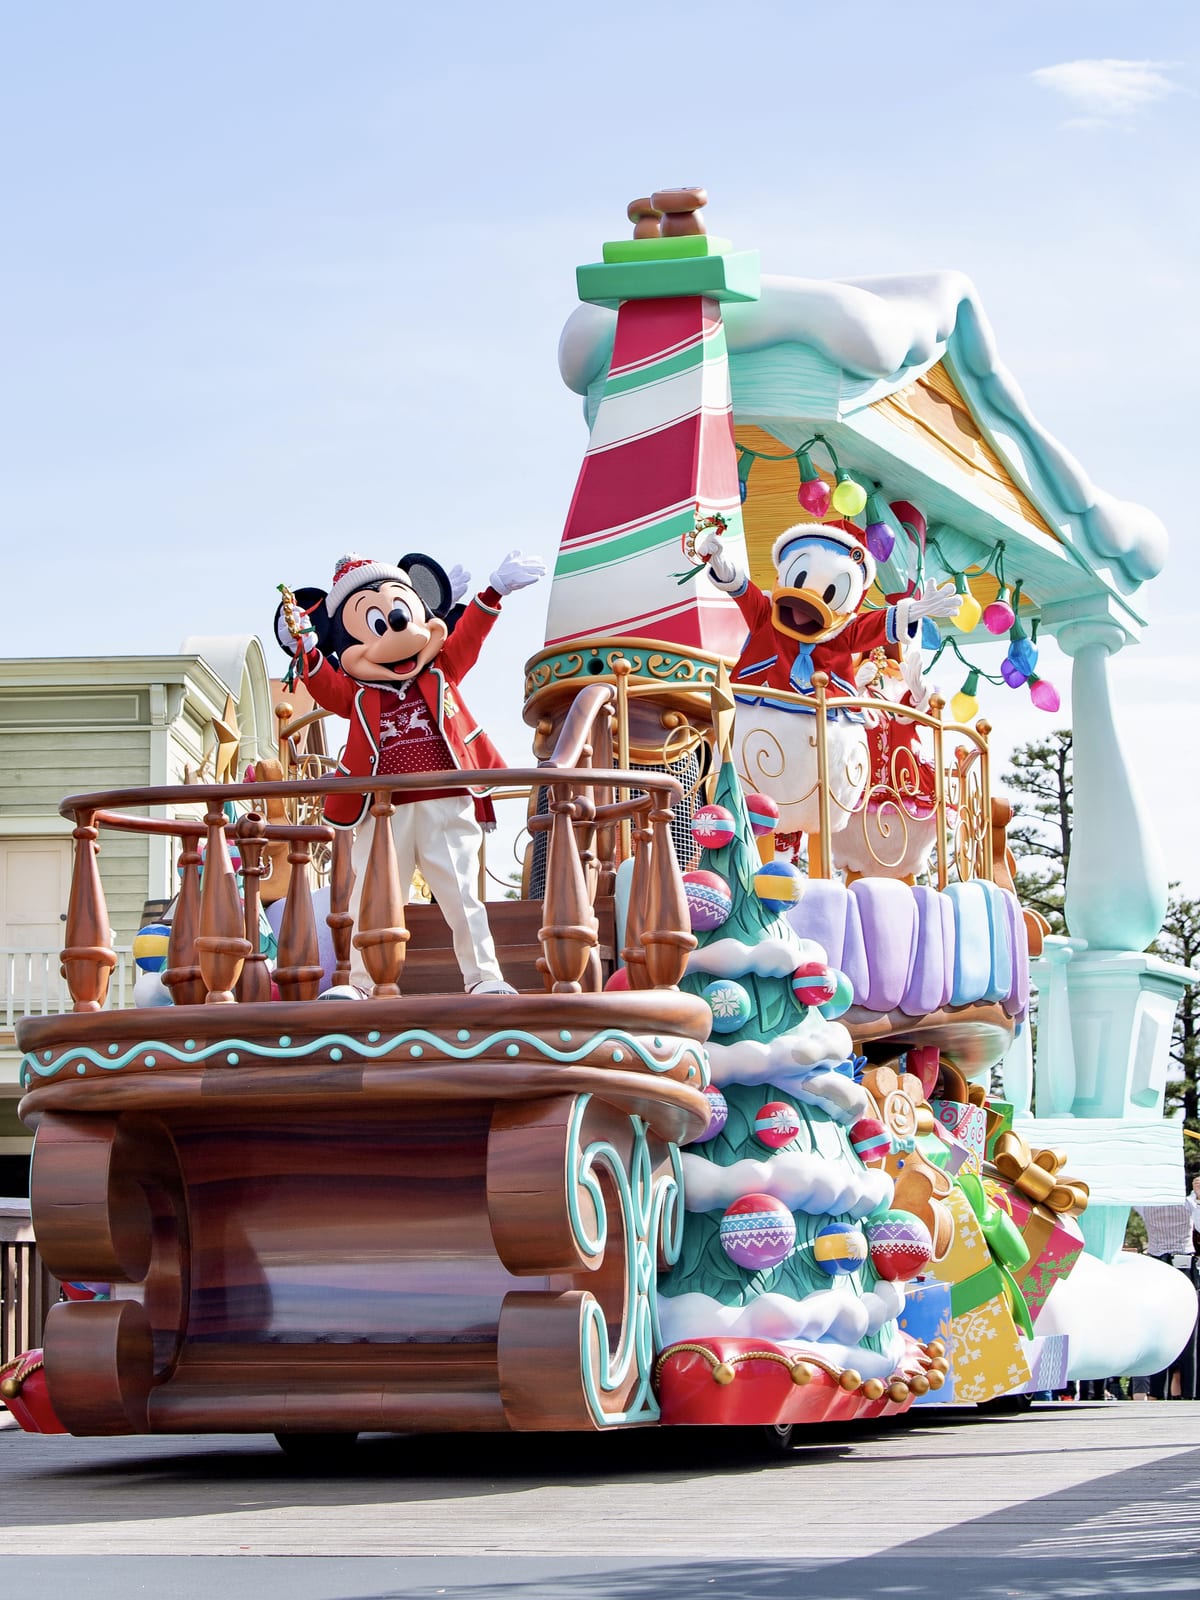 ミッキー&フレンズのグリーティングパレード:ディズニー・クリスマス